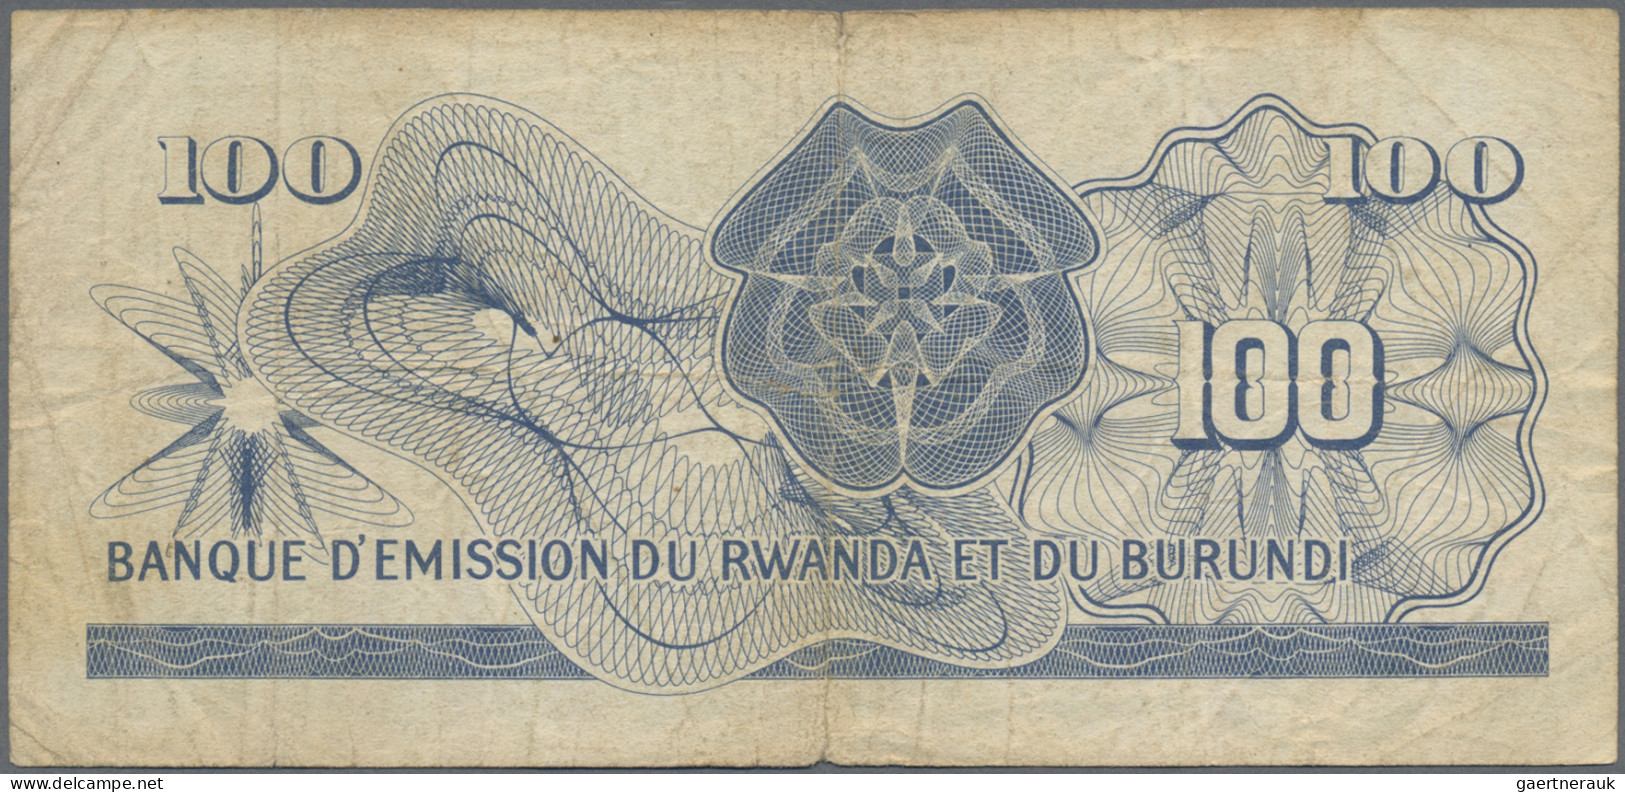 Rwanda-Burundi: Banque D'Émission Du Rwanda Et Du Burundi 100 Francs 15.09.1960, - Ruanda-Urundi